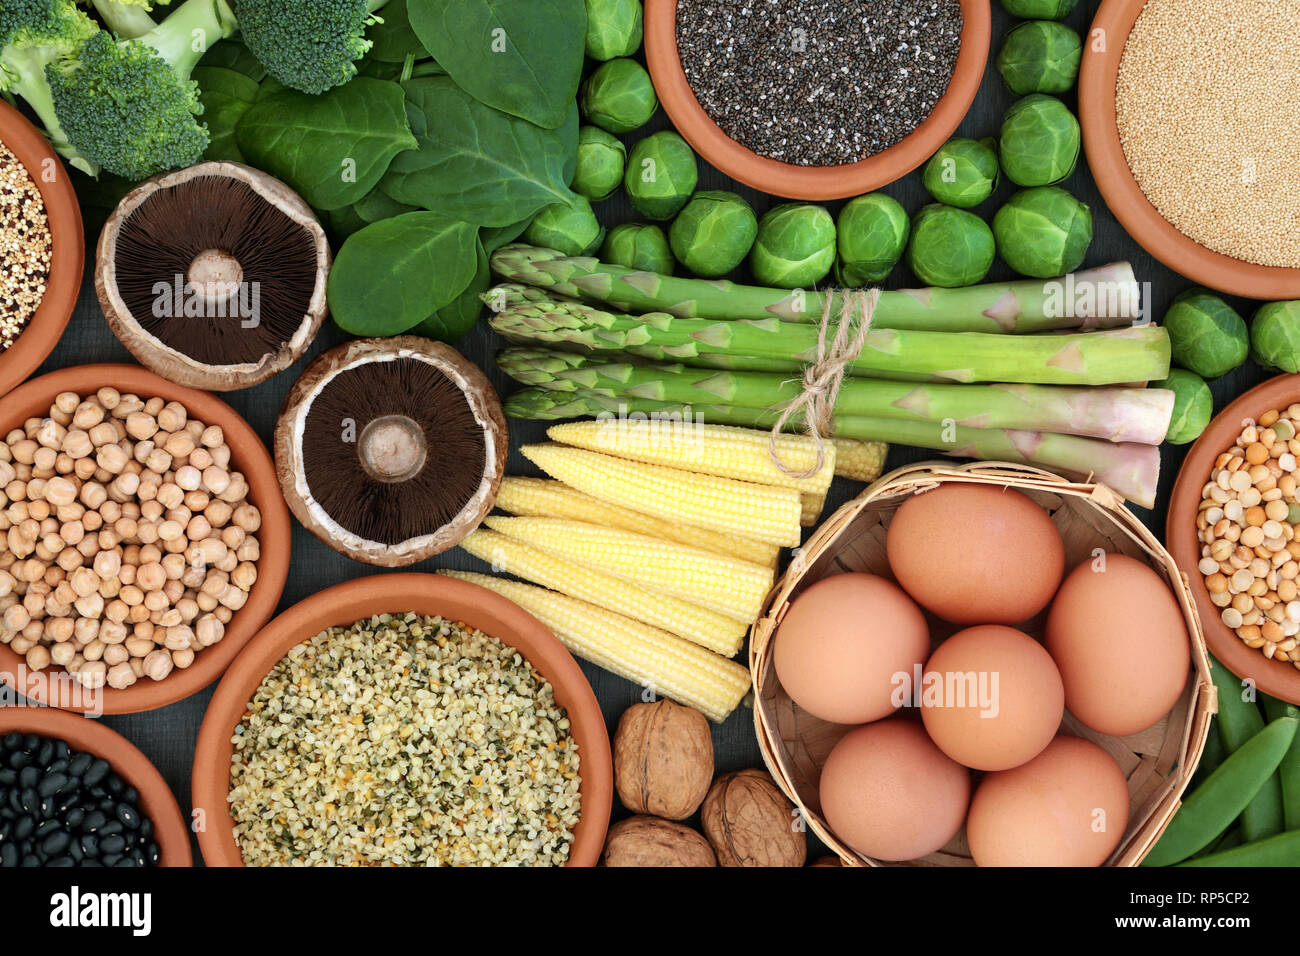 Hohe Proteinquelle Gesundheit Ernährung mit frischem Gemüse, Hülsenfrüchte, Nüsse, Körner und Samen, Hohe reich an Ballaststoffen, Antioxidantien und Vitaminen. Ansicht von oben. Stockfoto